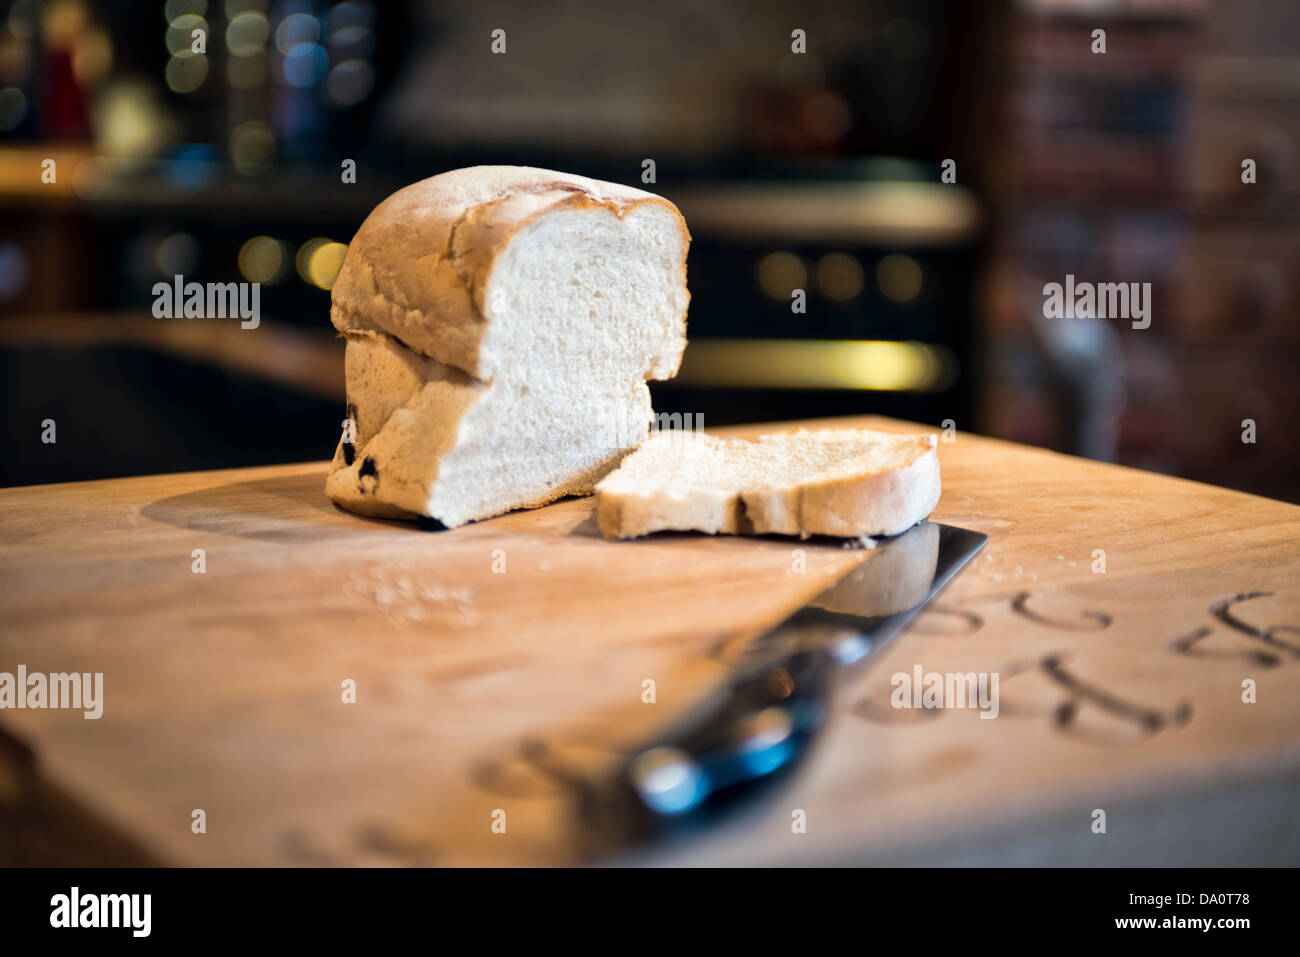 Ein Geschnetzeltes Laib Weißbrot auf einem Steckbrett mit einer de-fokussierten Tranchiermesser in einem Land Küche Stockfoto